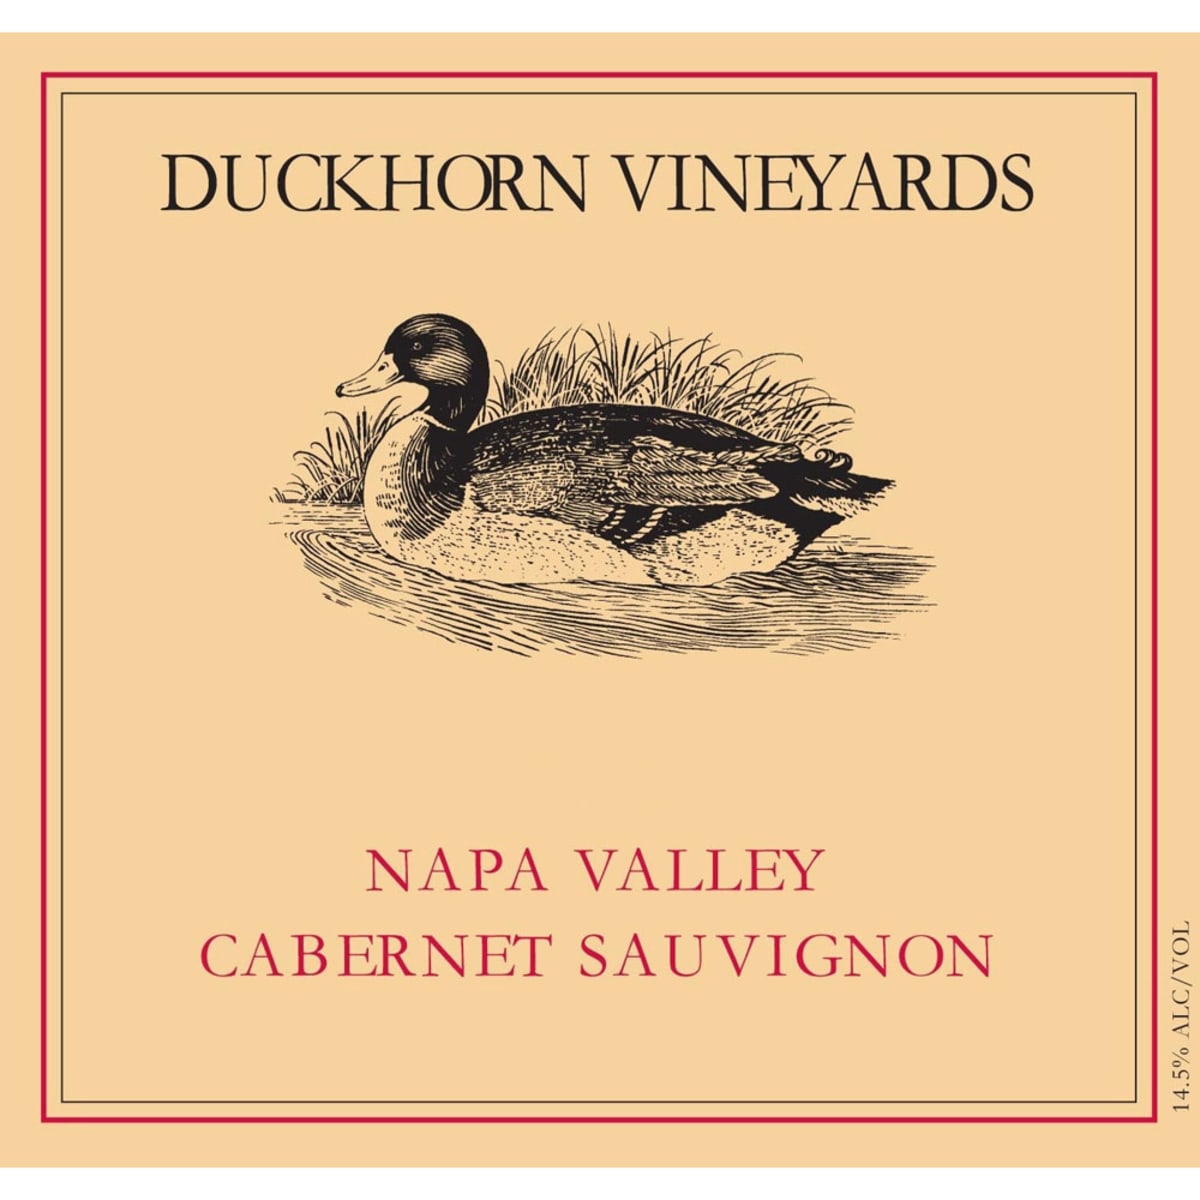 1991 Duckhorn Vineyards Cabernet Sauvignon, Napa Valley, USA image